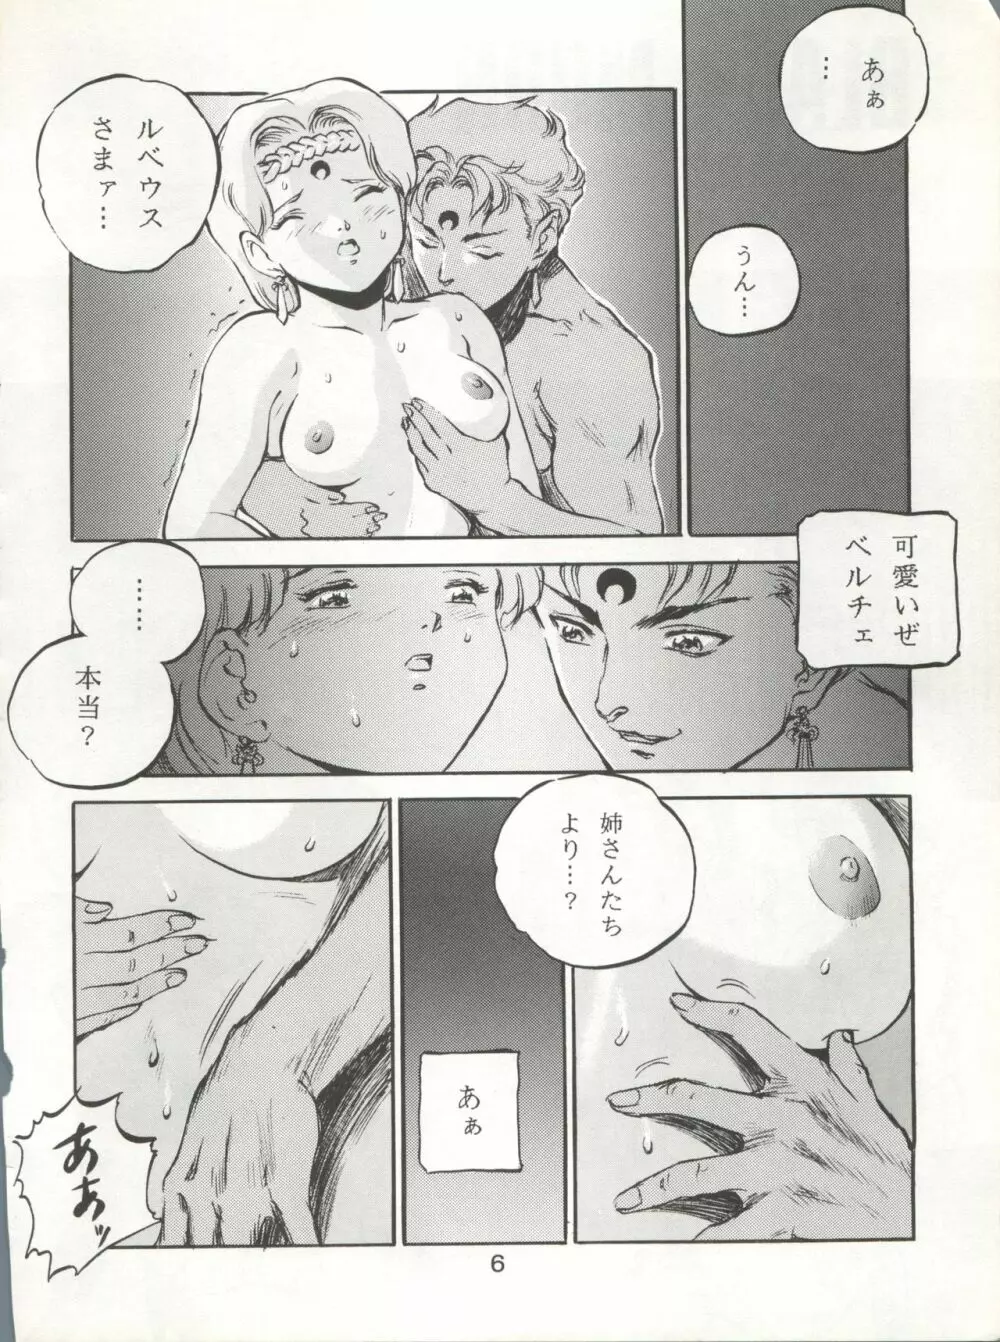 KATZE 7 上巻 - page7